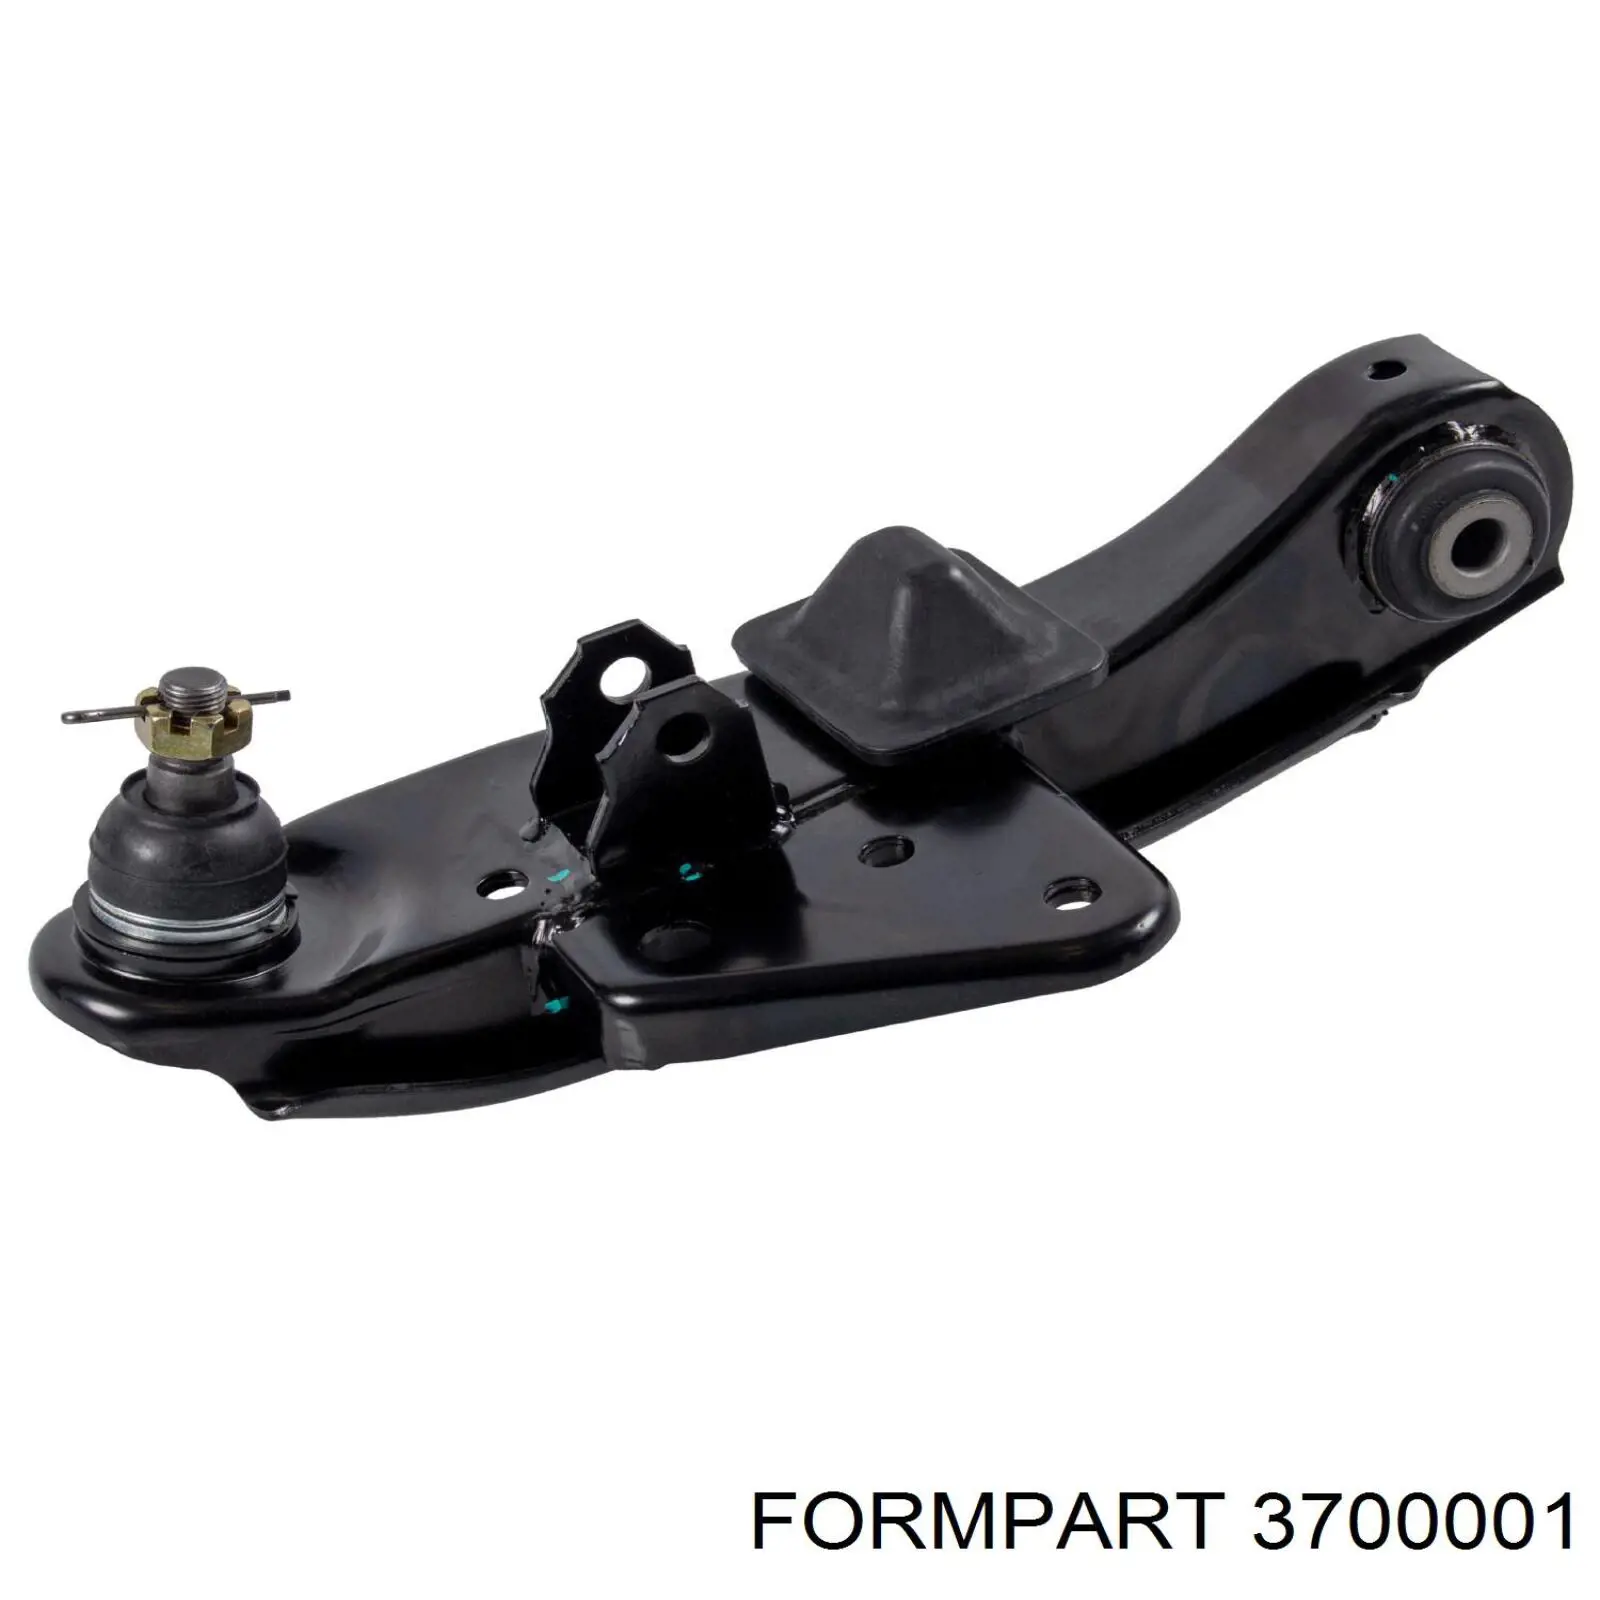 3700001 Formpart/Otoform silentblock de suspensión delantero inferior